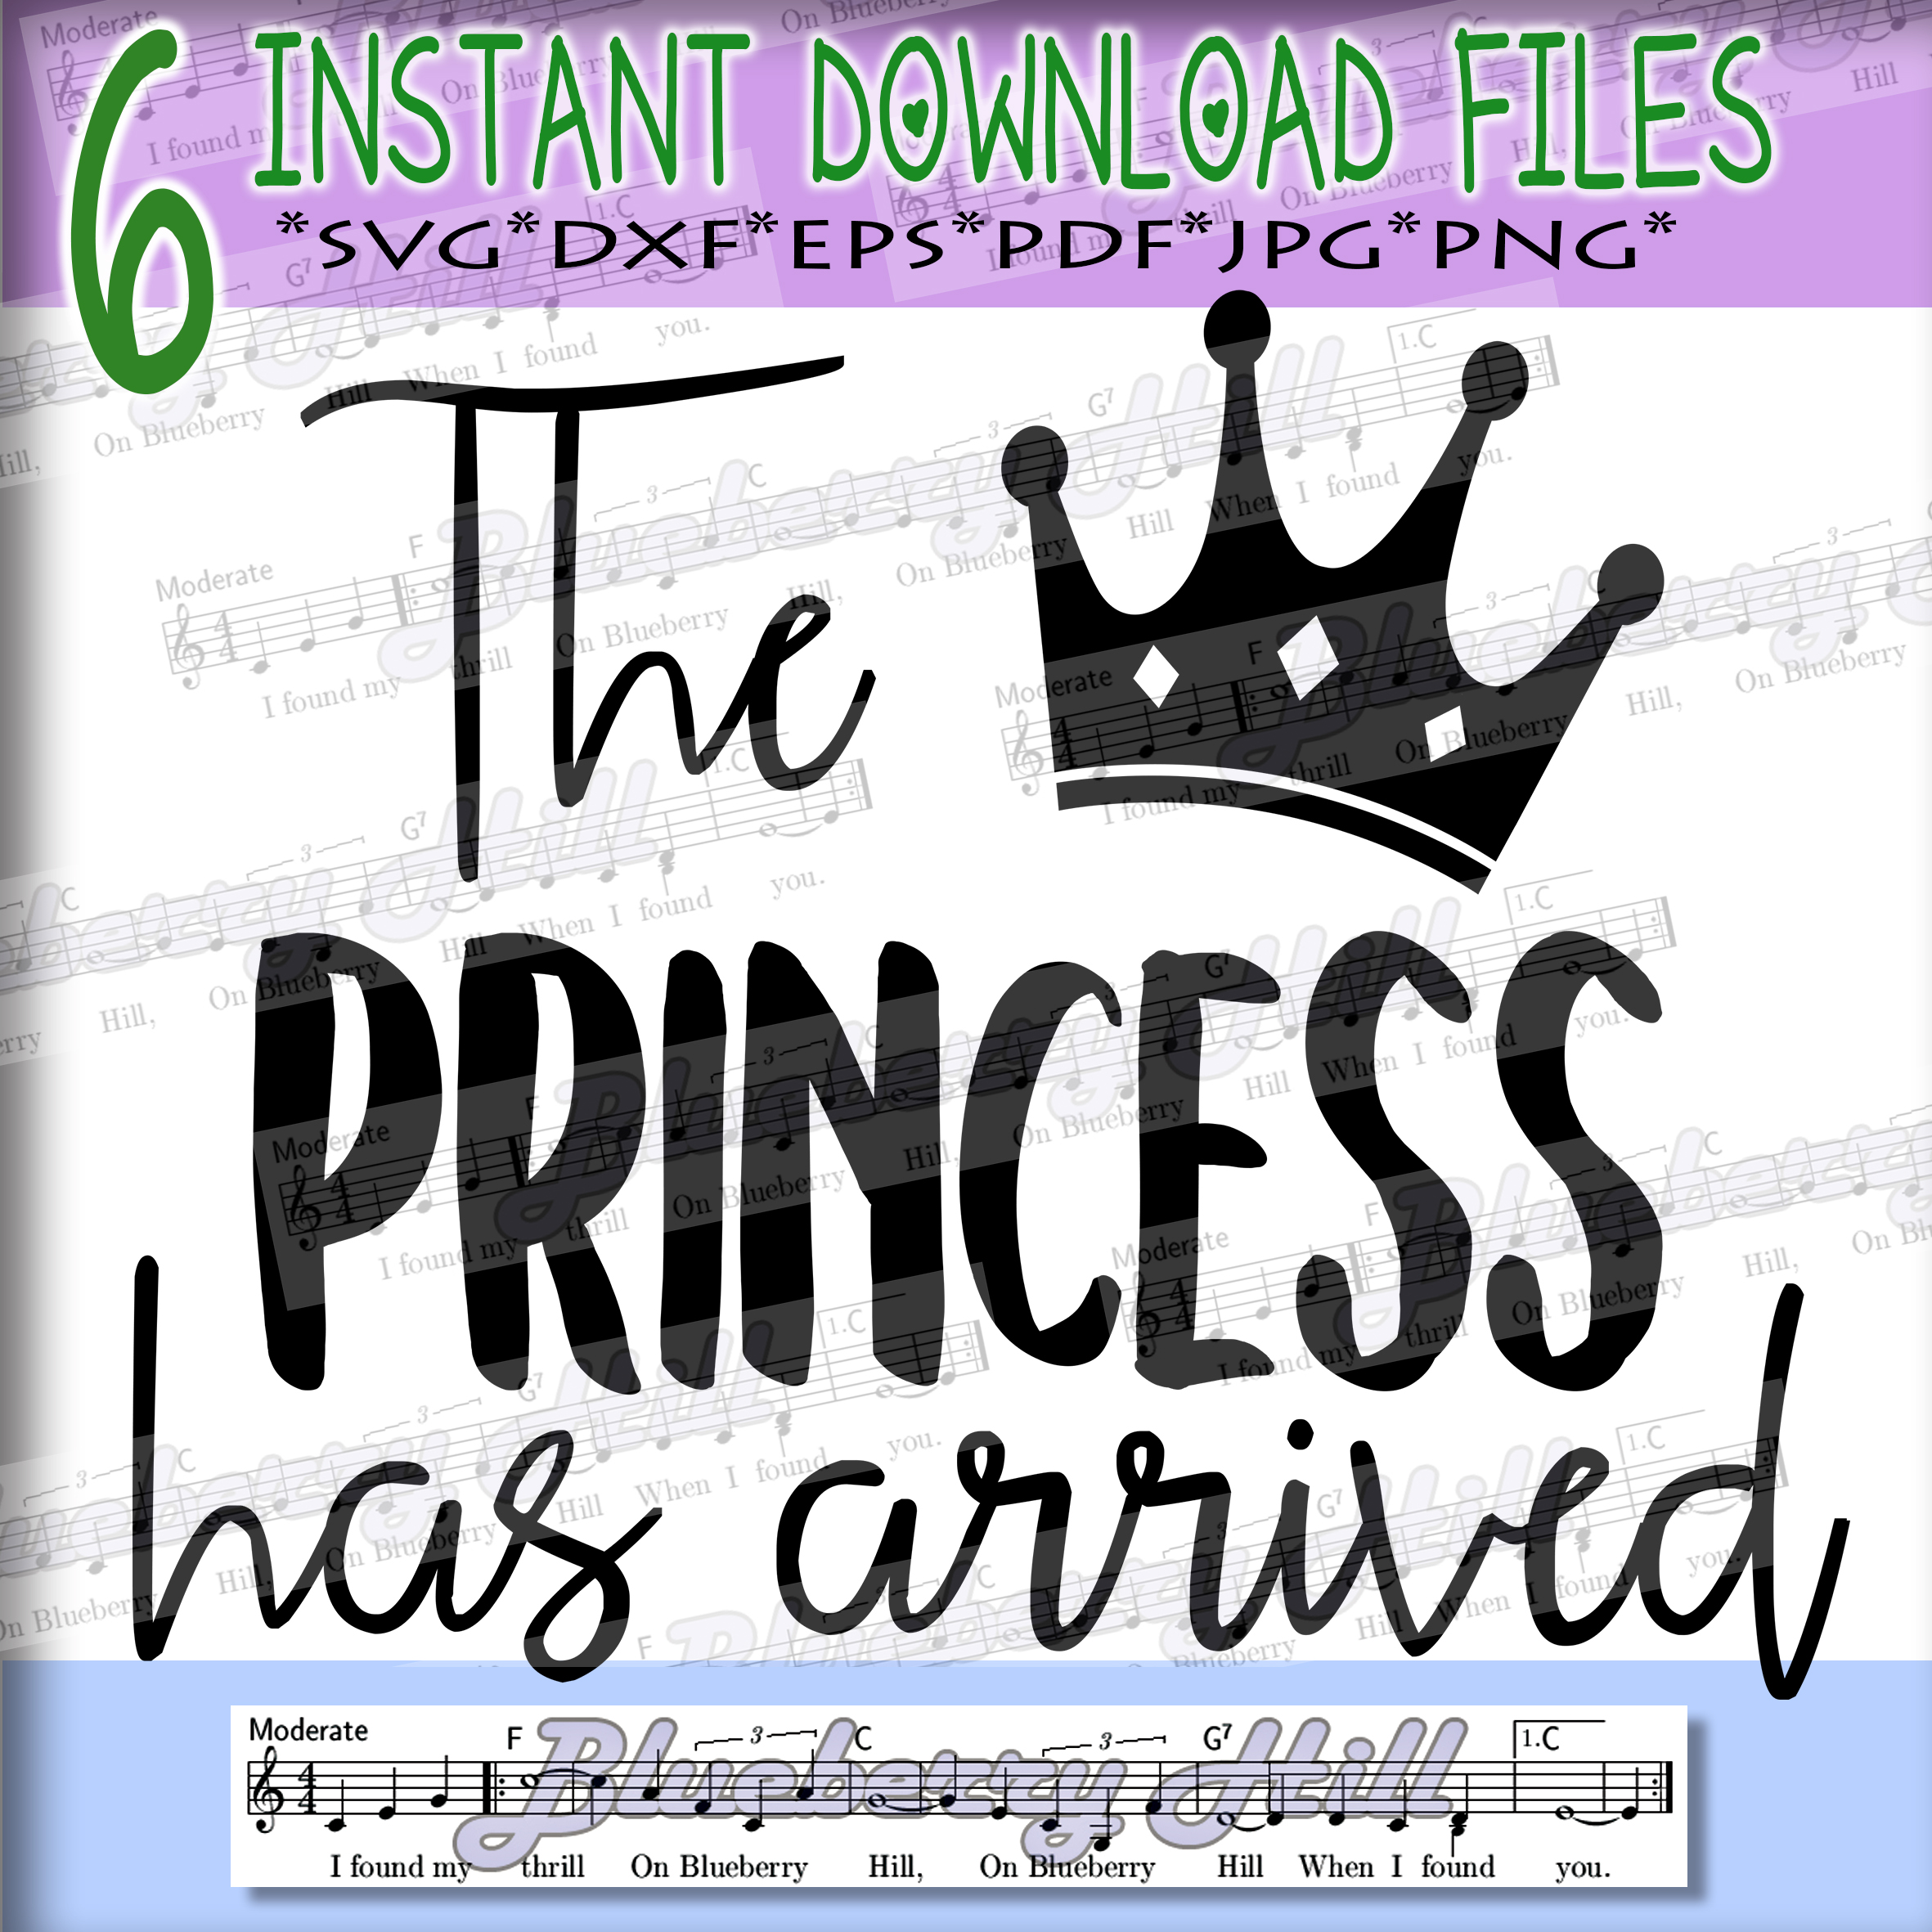 Download The Princess Has Arrived SVG - Prince | Design Bundles